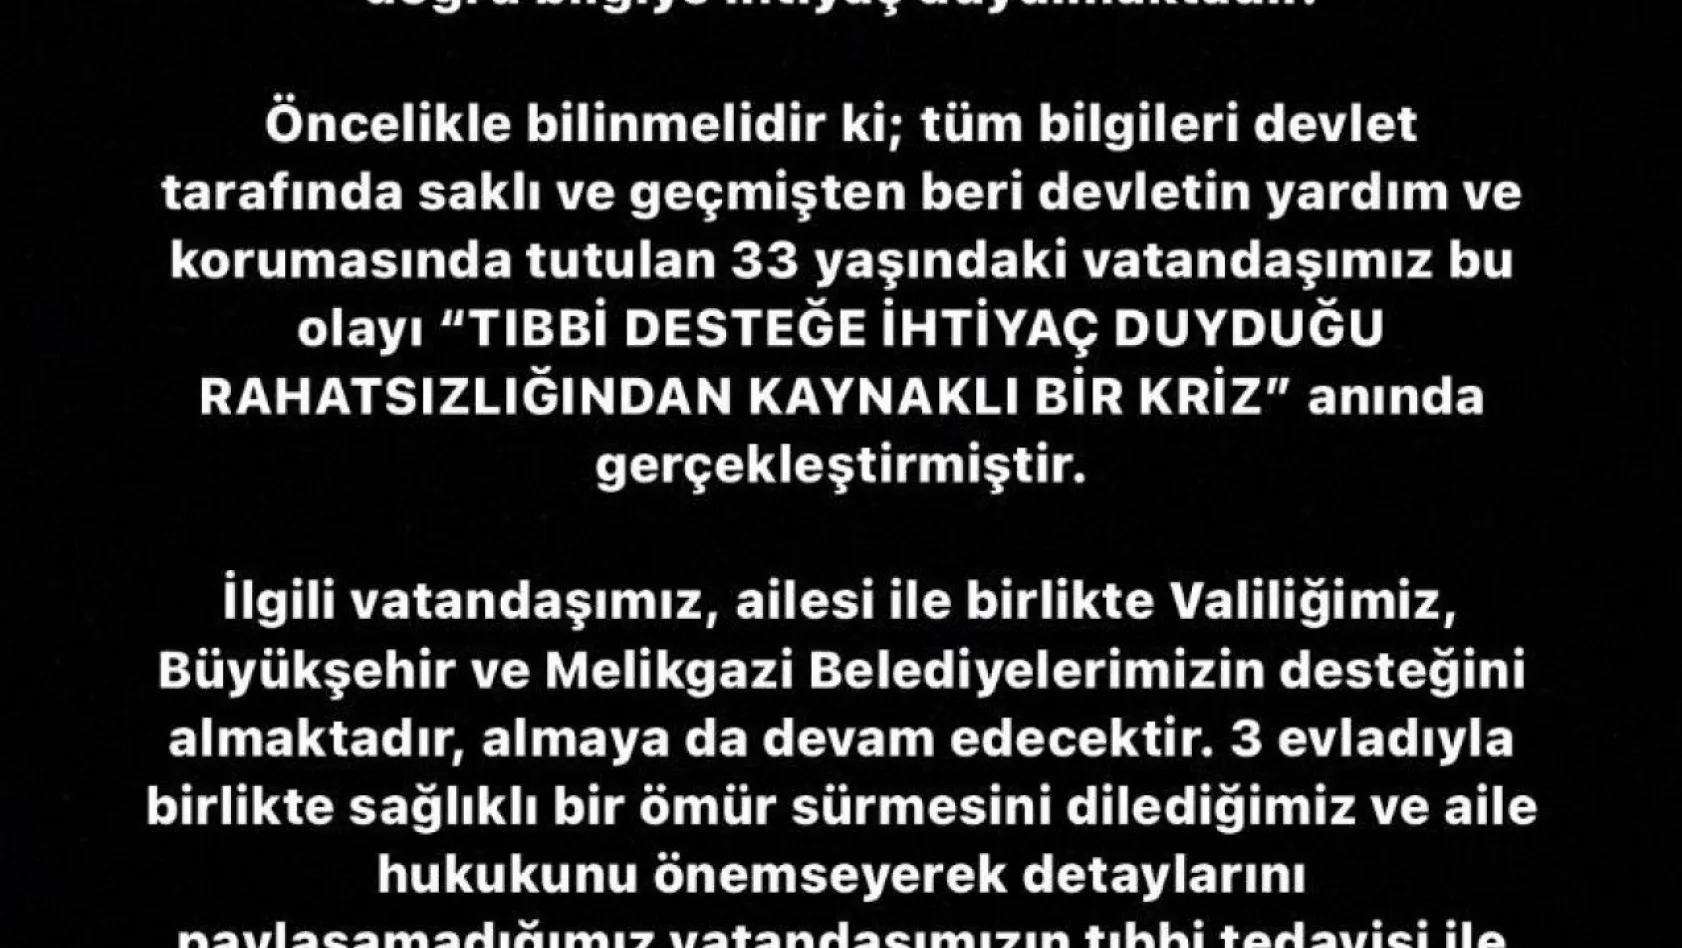 Kayseri Büyükşehir Belediyesinden kendine zarar veren şahıs ile ilgili açıklama